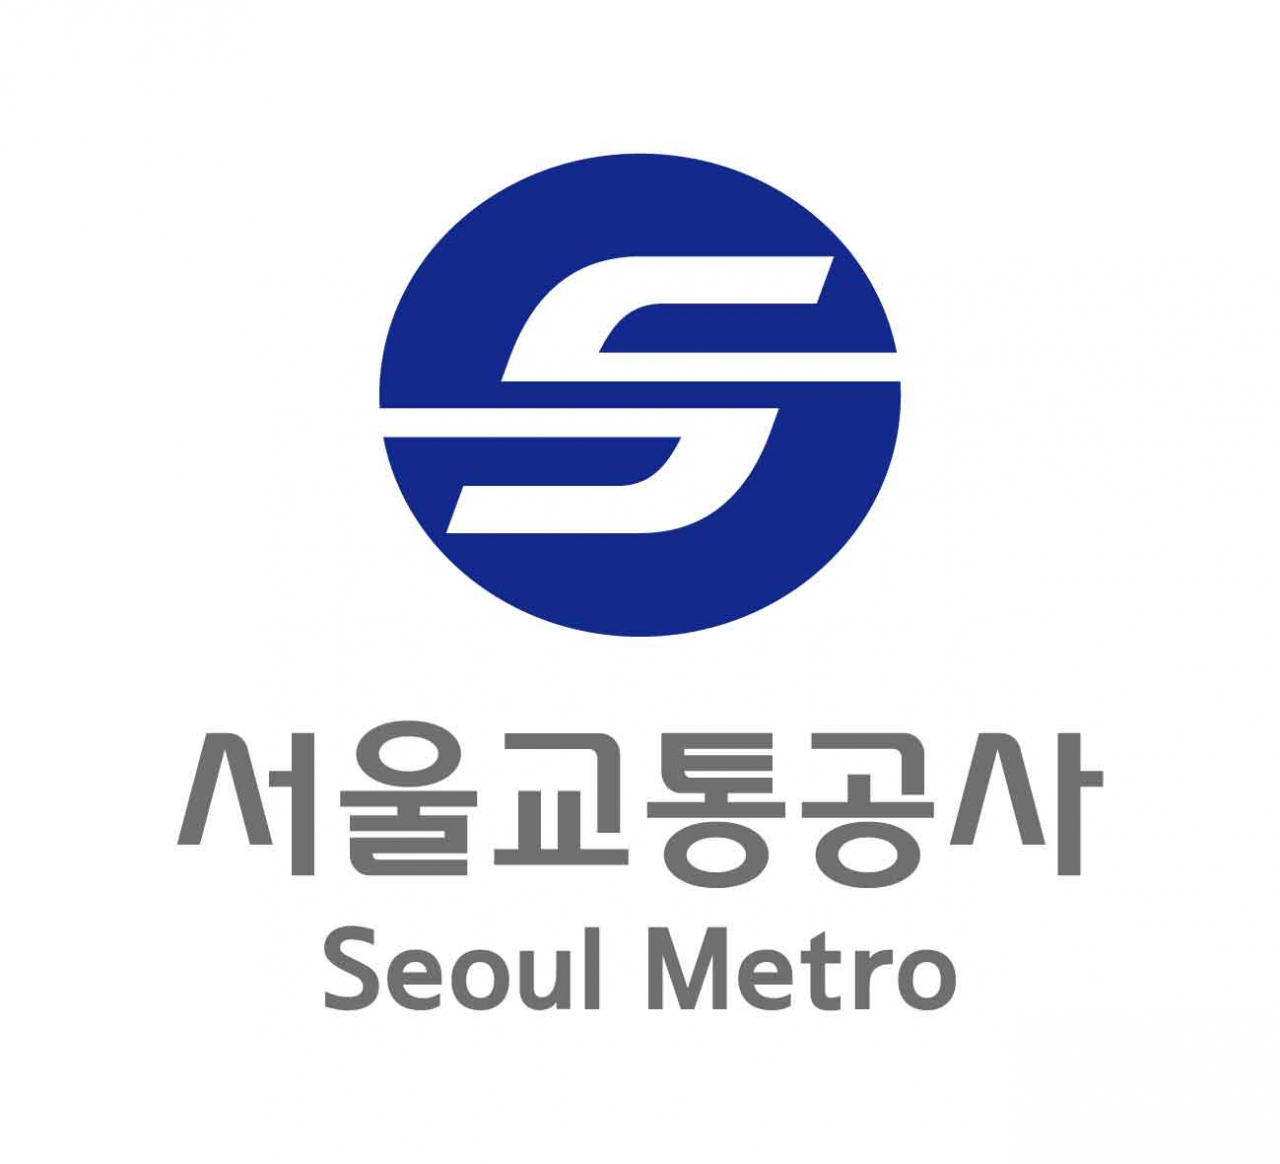 Seoul Metro logo (Seoul Metro)